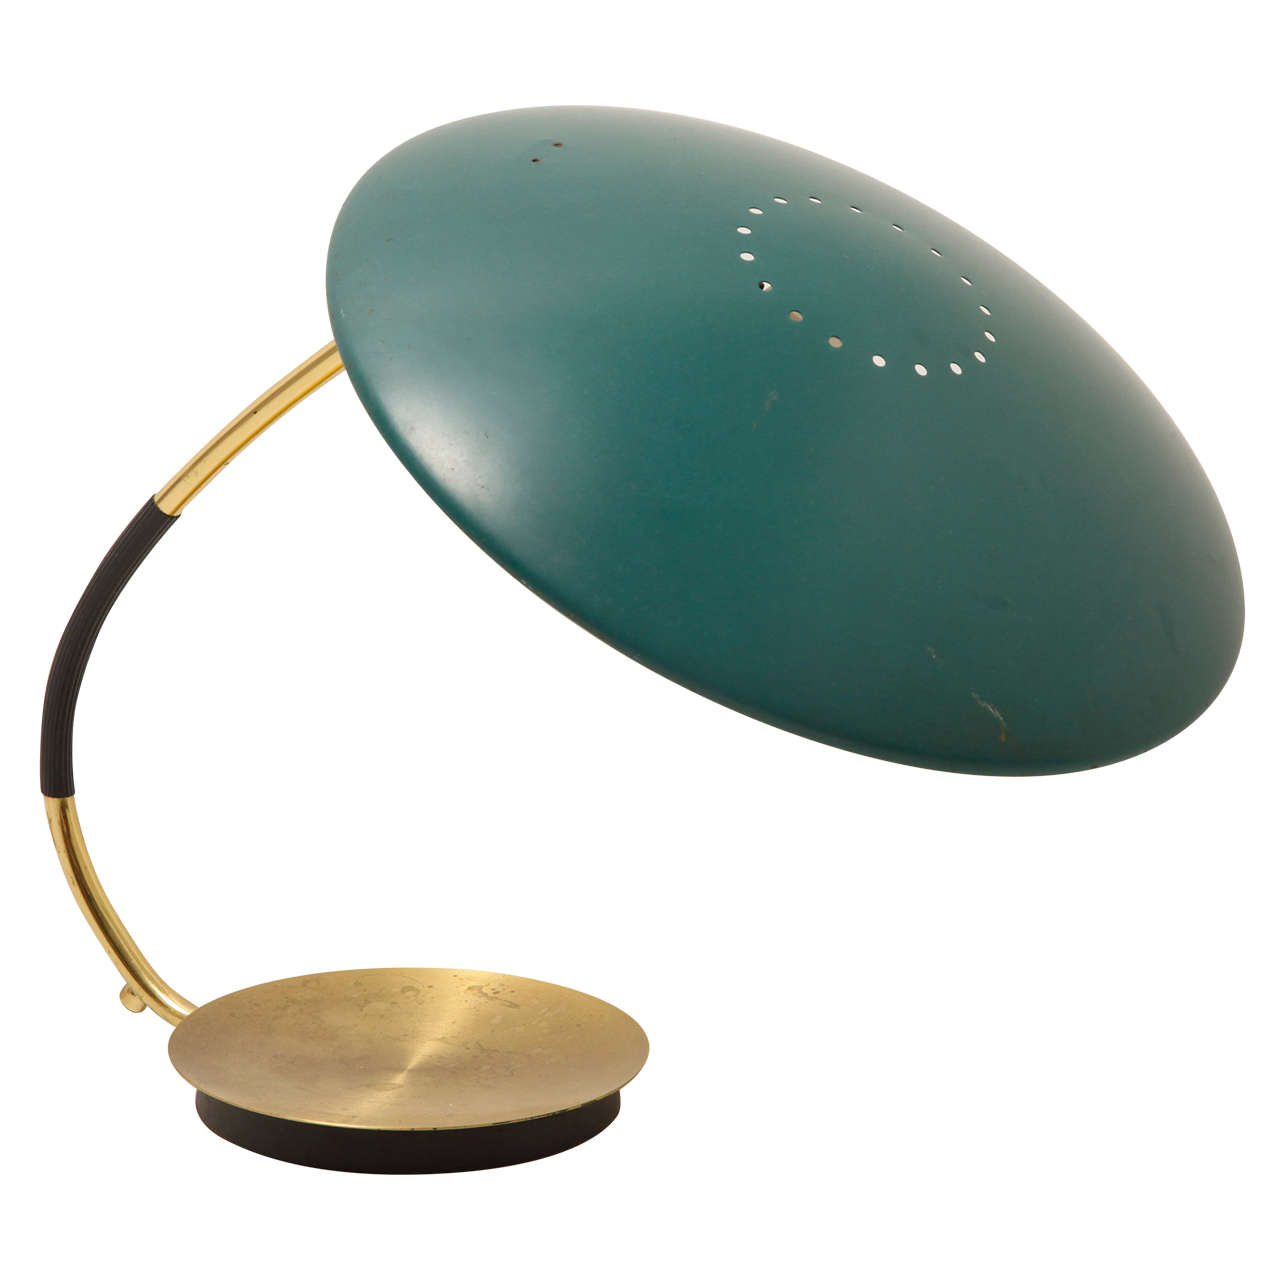 Christian Dell Bauhaus Desk Lamp